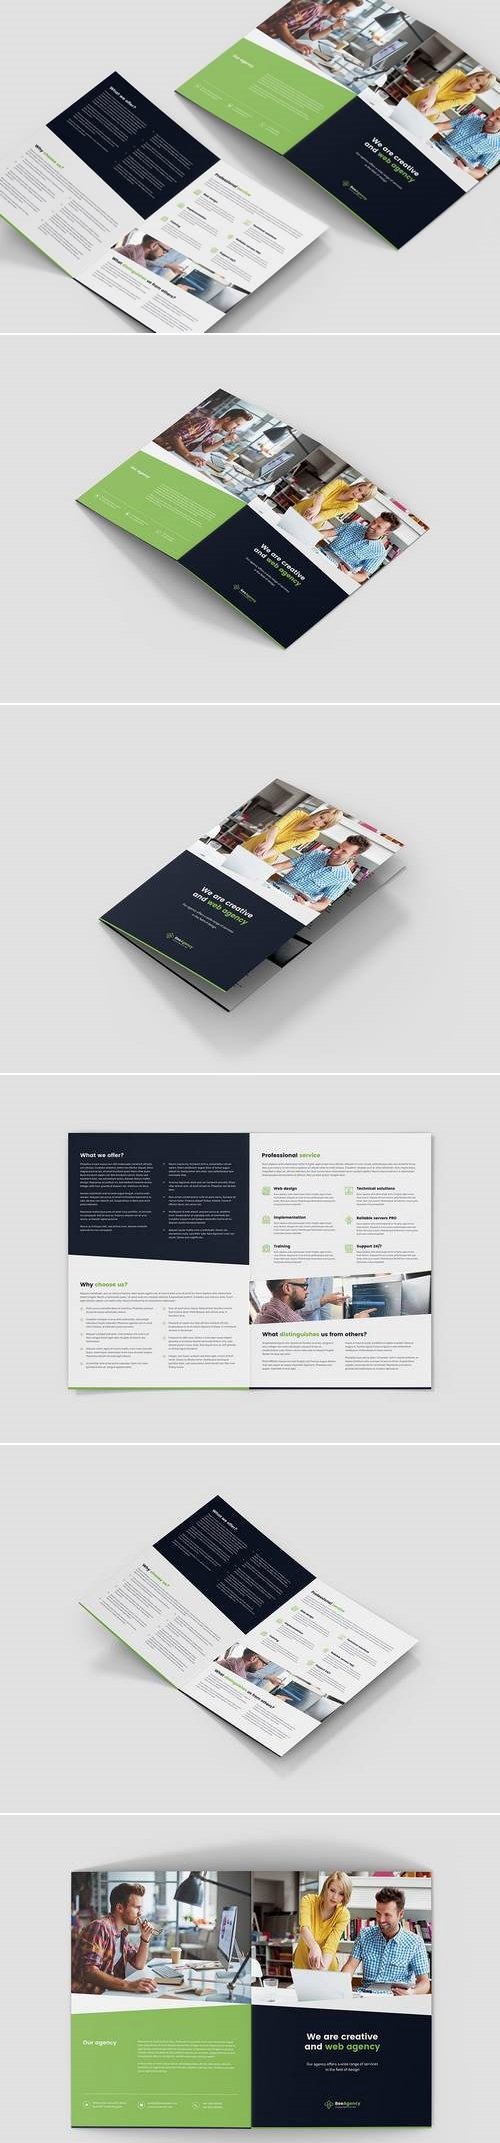 Brochure - Web Agency Bi-Fold A4/US